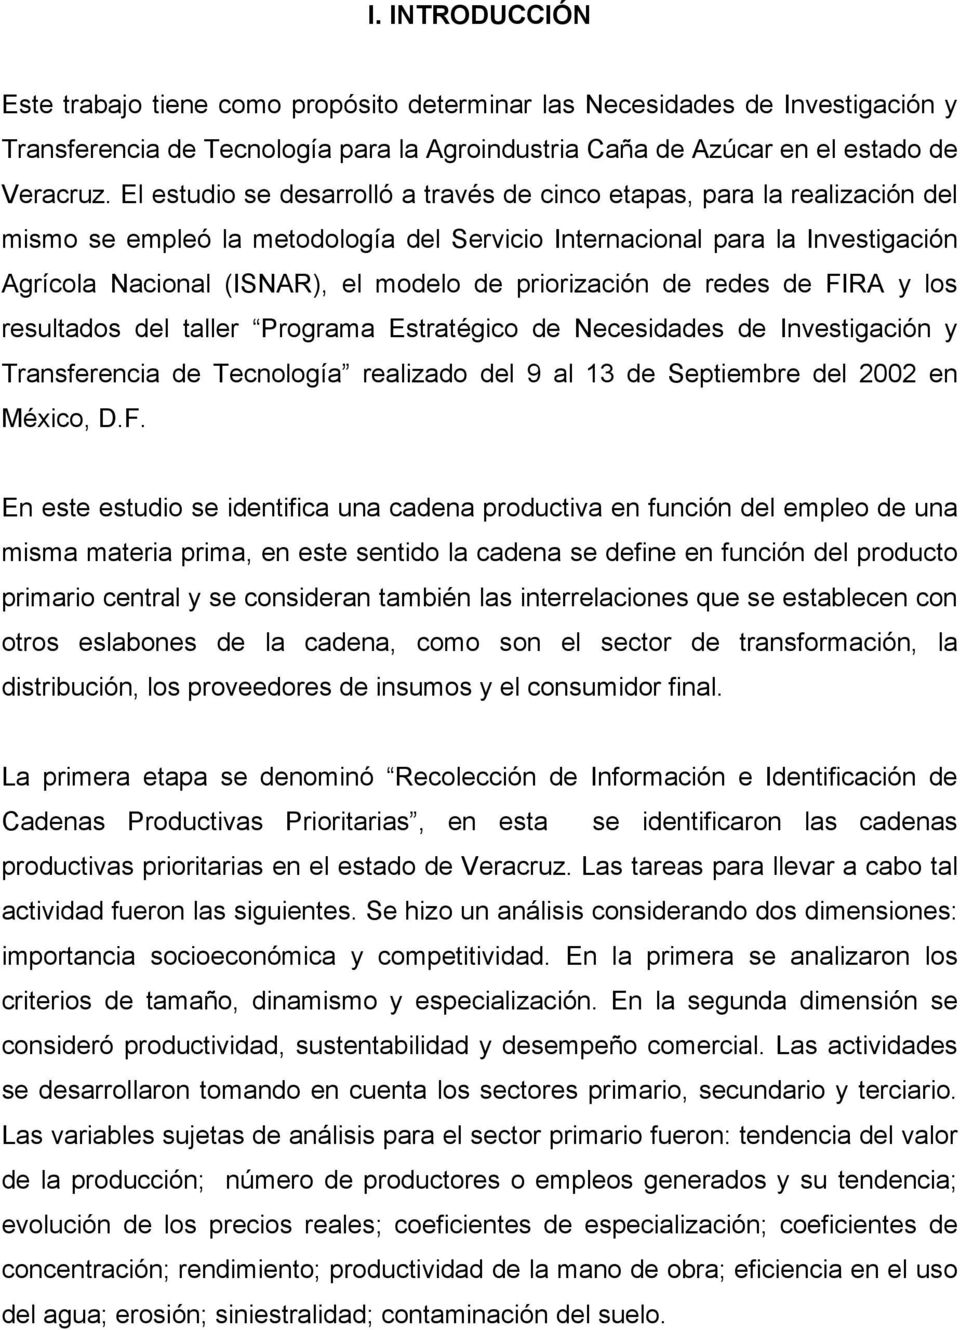 priorización de redes de FIRA y los resultados del taller Programa Estratégico de Necesidades de Investigación y Transferencia de Tecnología realizado del 9 al 13 de Septiembre del 2002 en México, D.